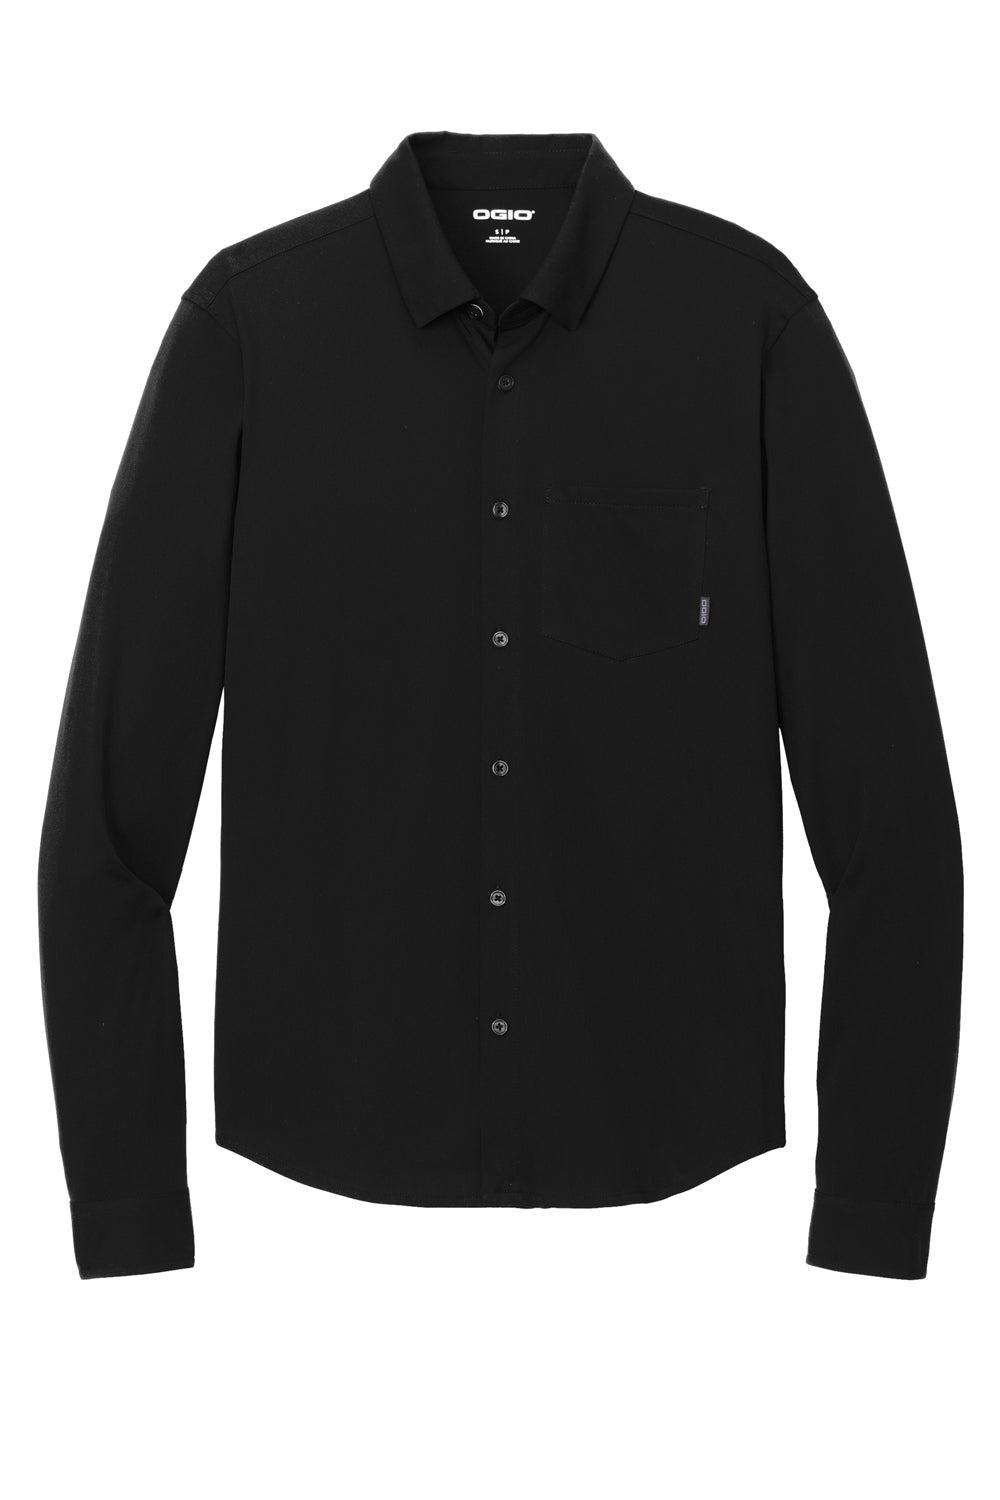 Ogio Mens Extend Long Sleeve Button Down Shirt Blacktop Flat Front